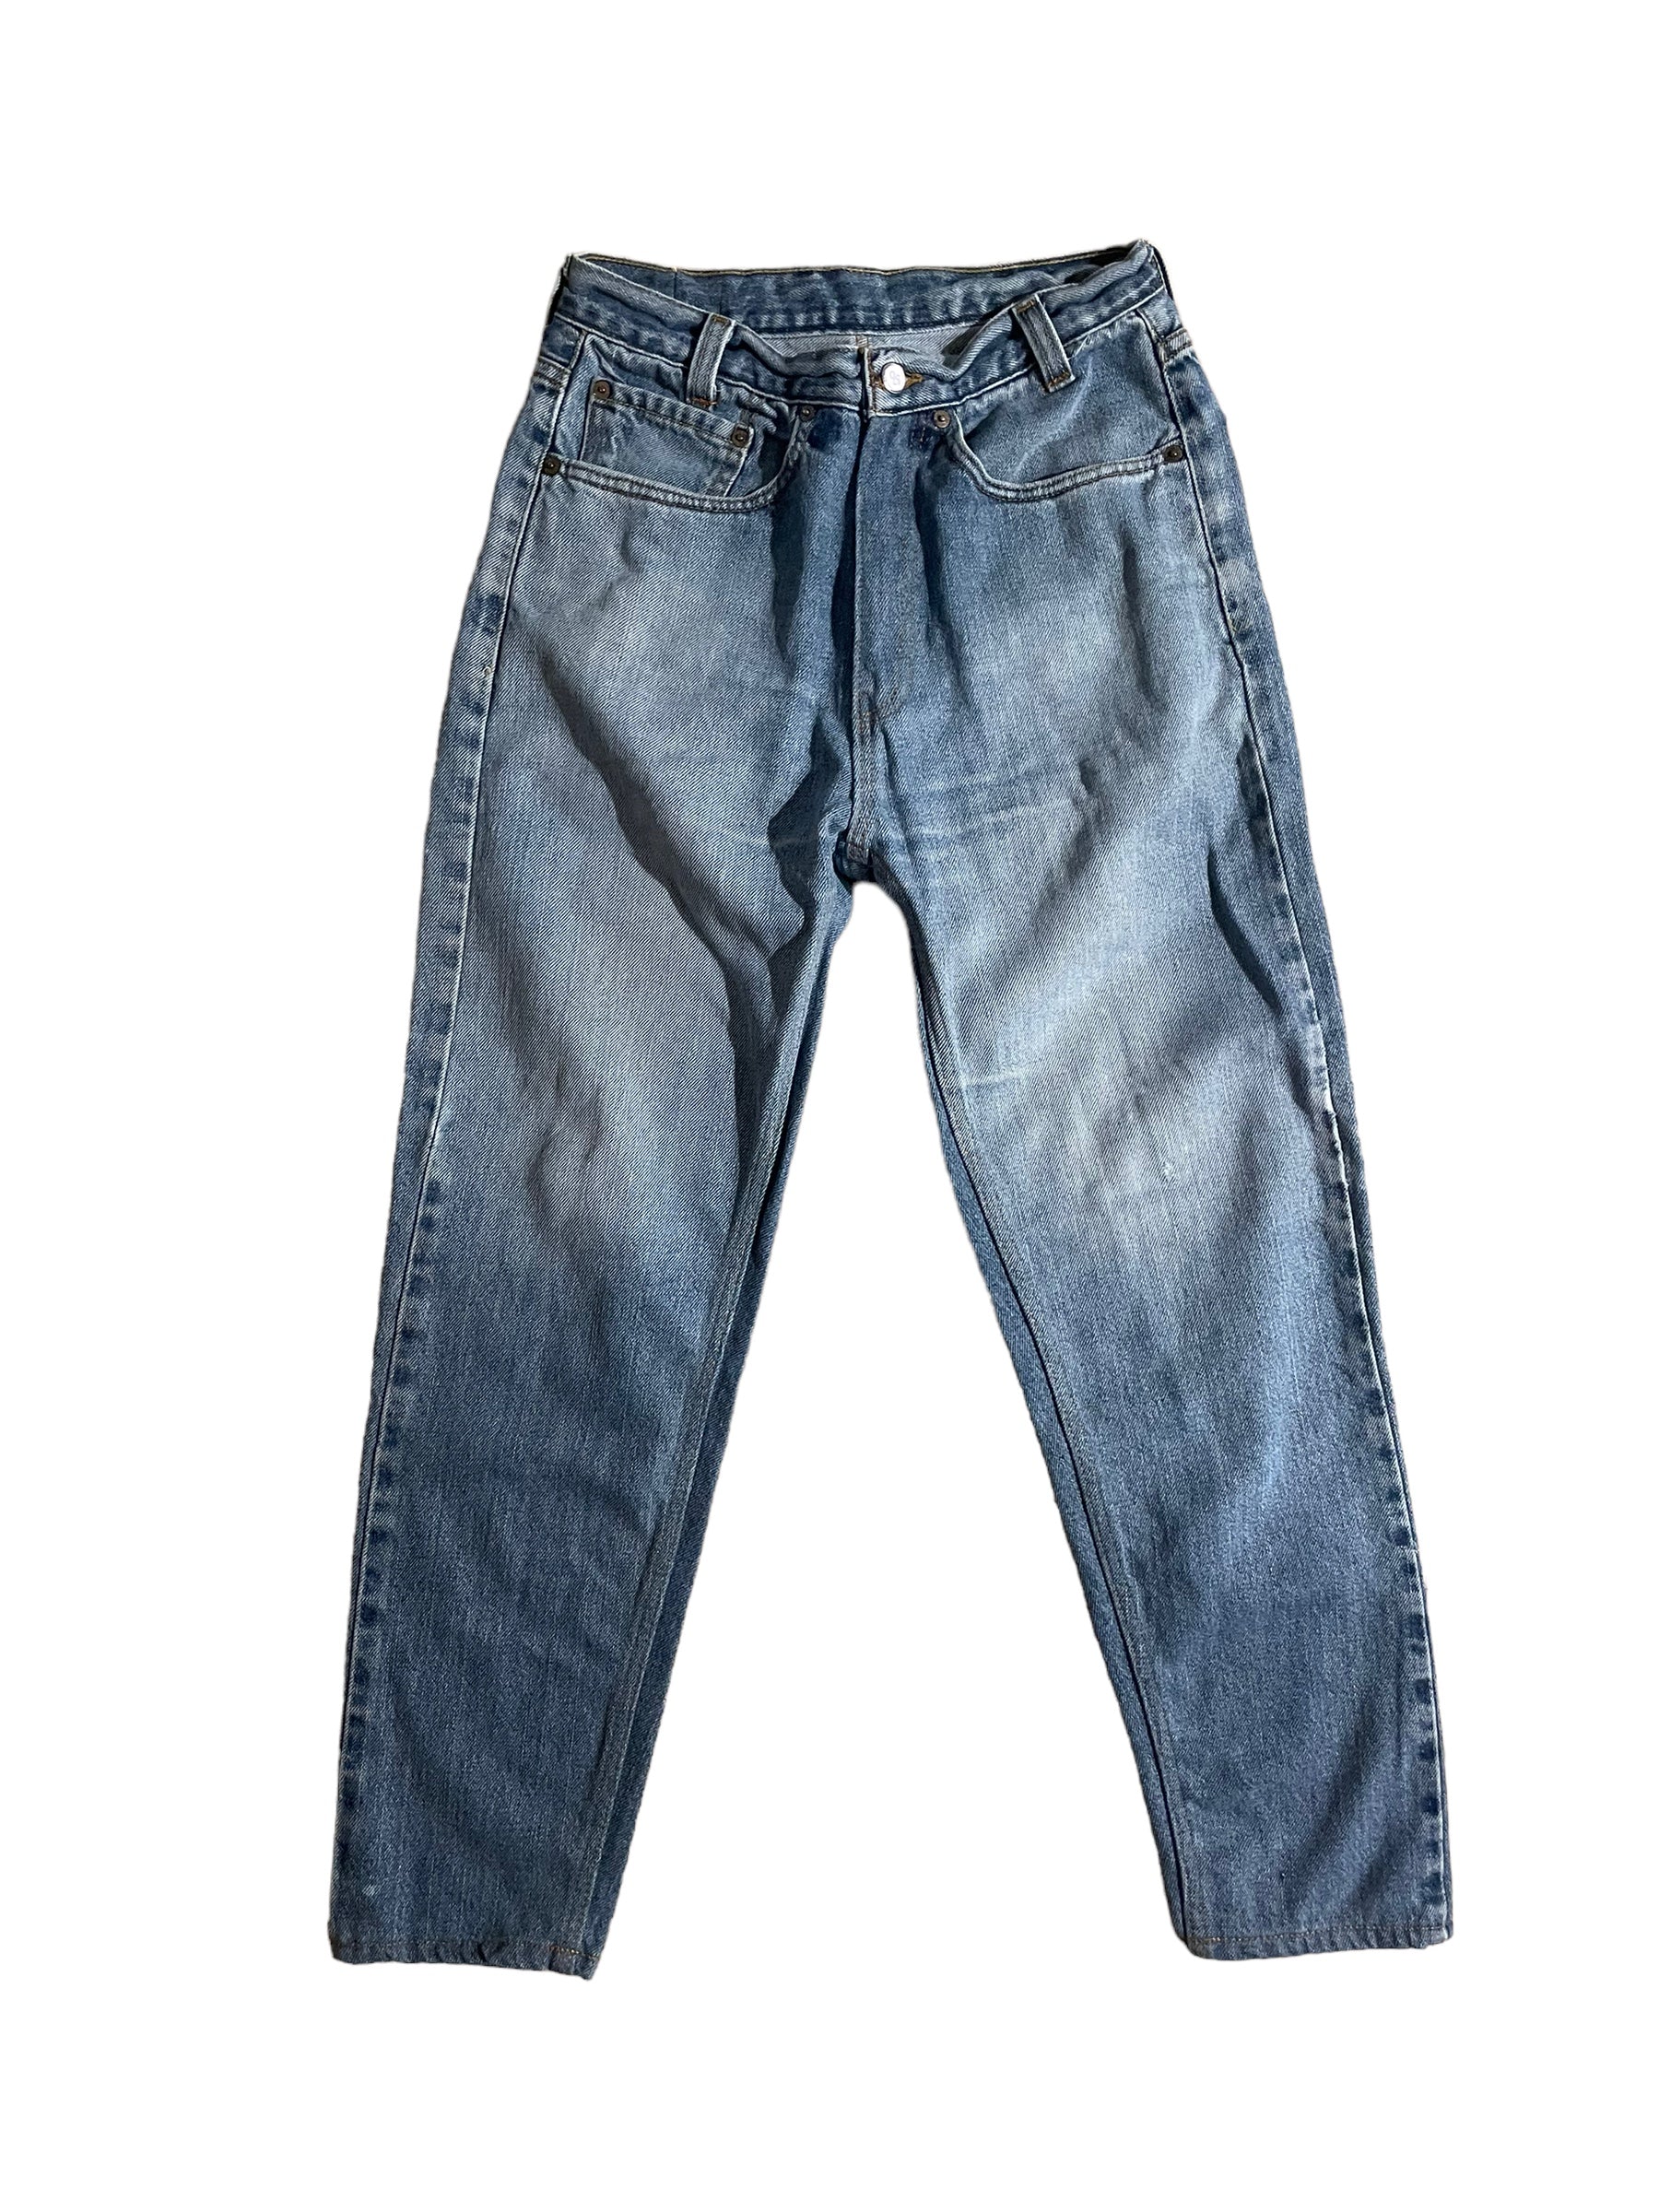 Vintage Levis jeans 28